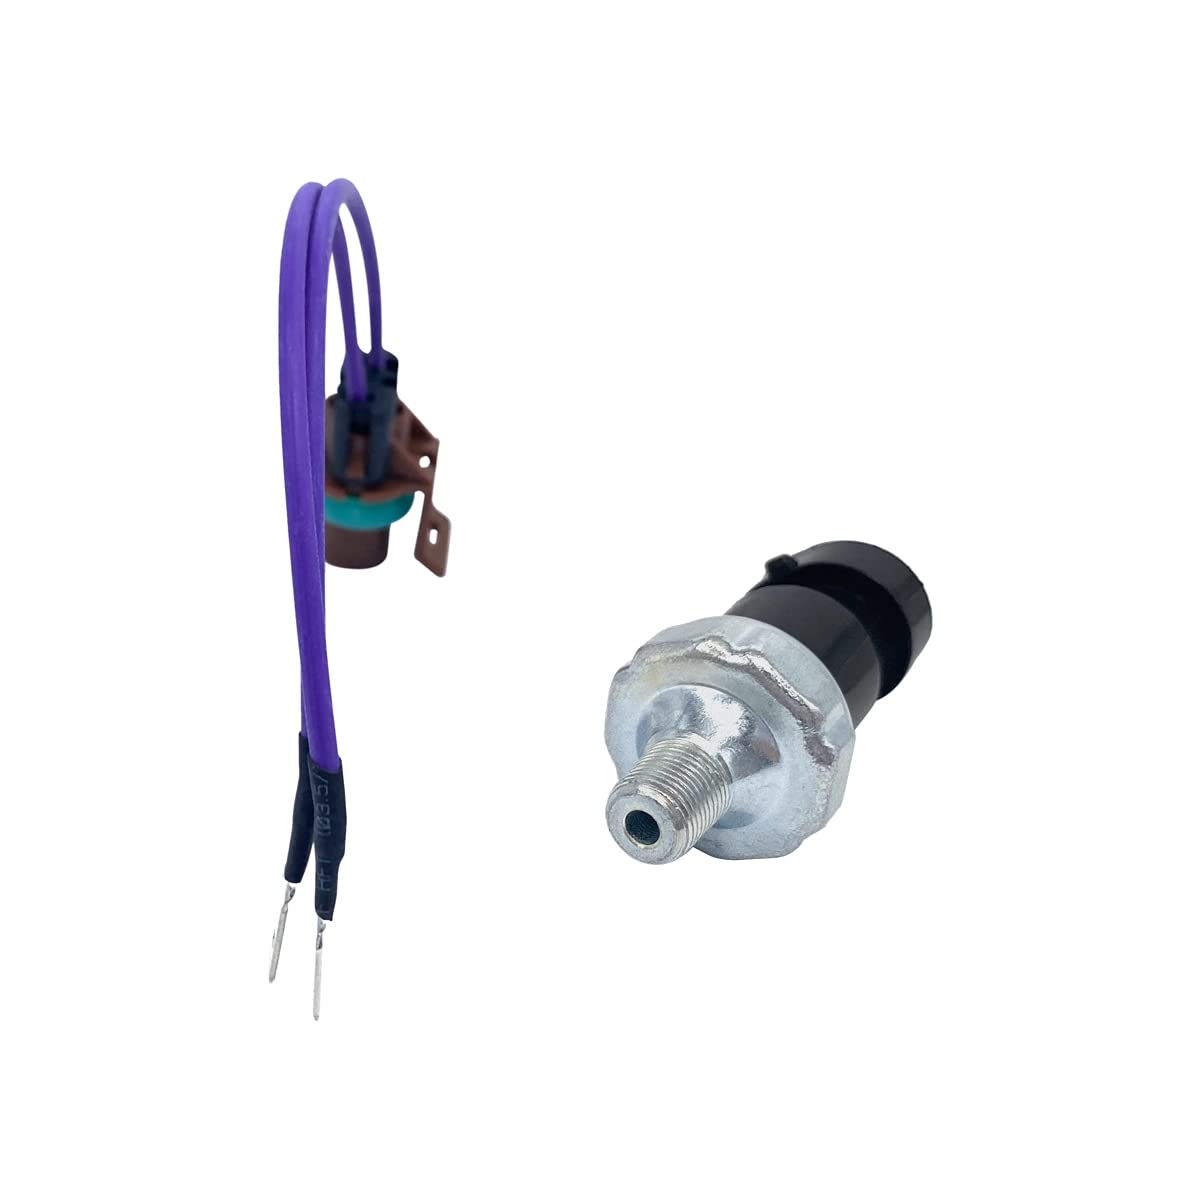 For MerCruiser Oil Pressure Fuel Pump Pressure Shut Sensor Switch 864252A01